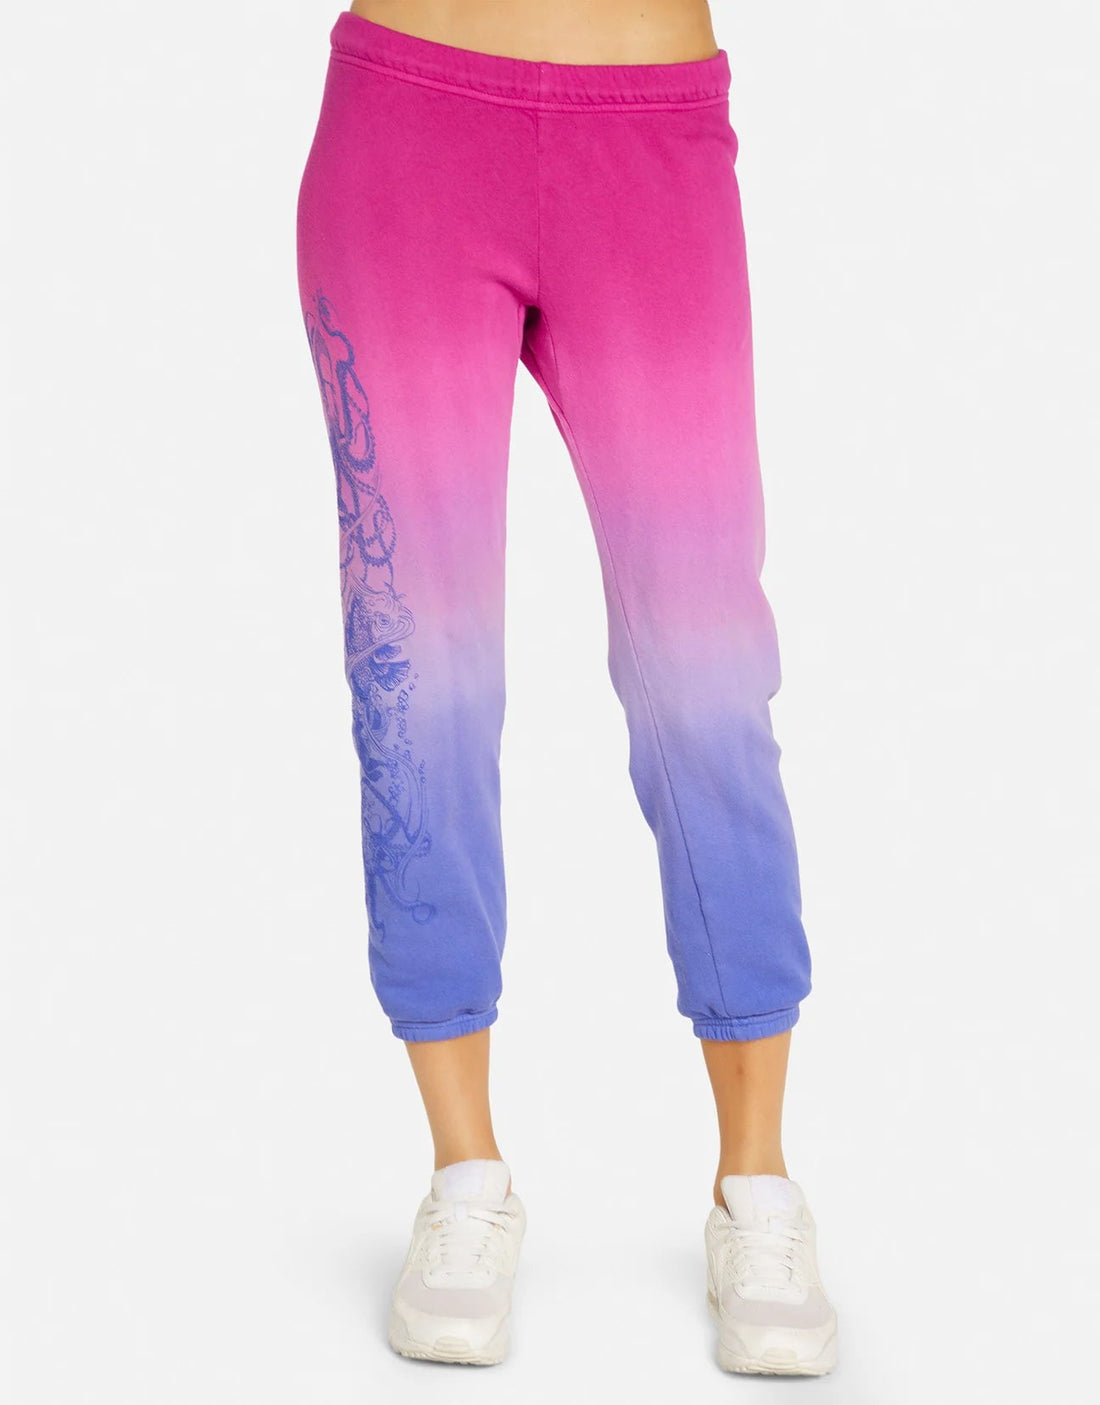 Shop Lauren Moshi Alana Octopus Sweatpants - Premium Jogging Pants from Lauren Moshi Online now at Spoiled Brat 